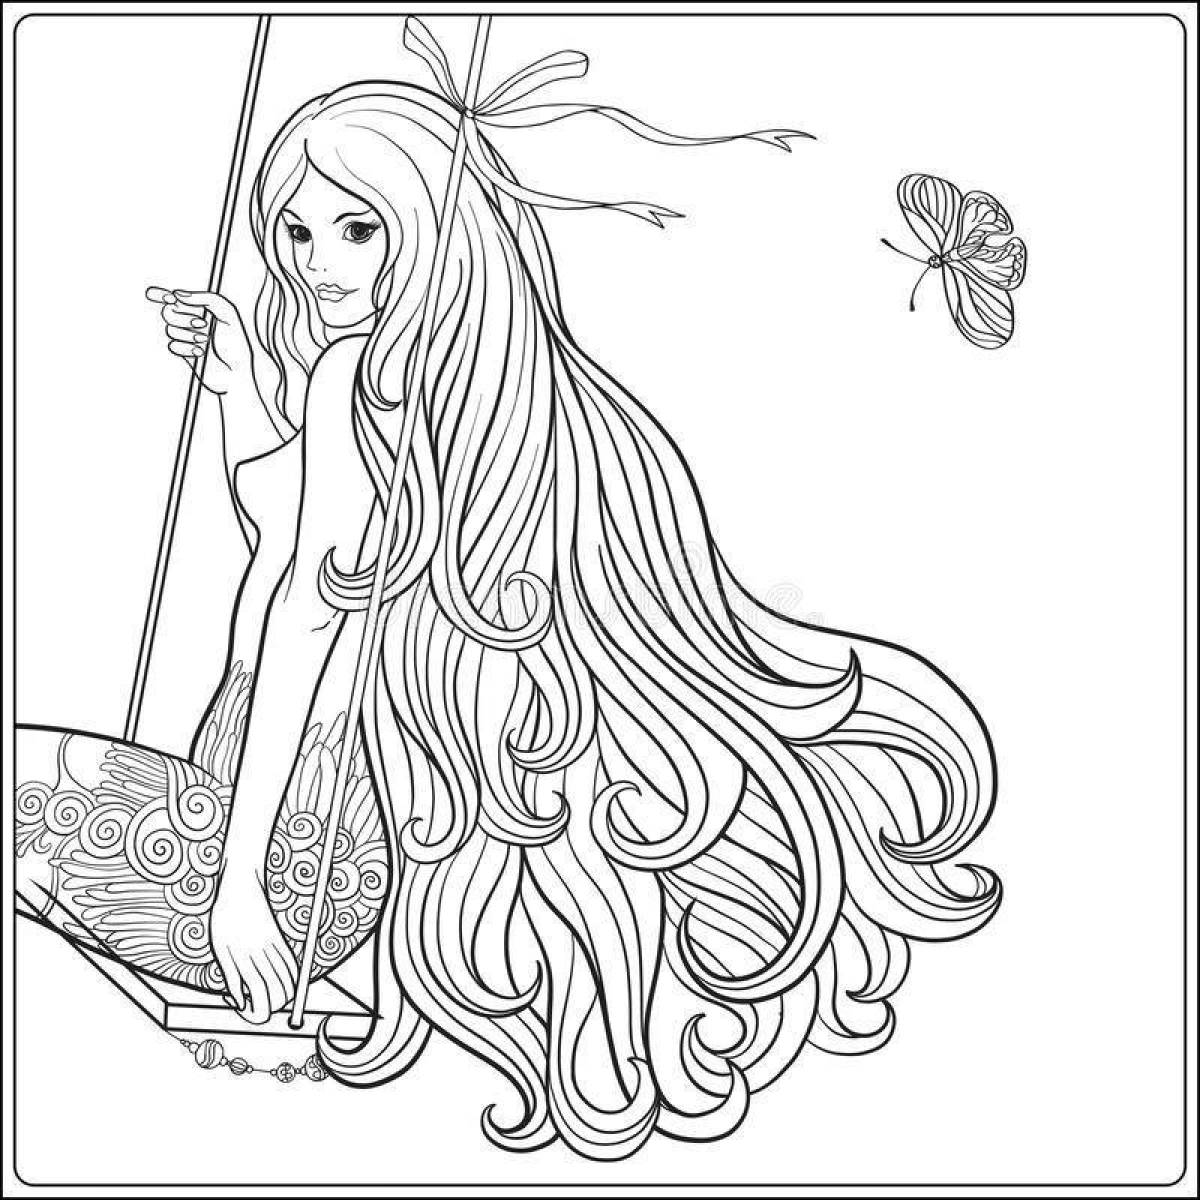 Радостная раскраска девочки с длинными волосами